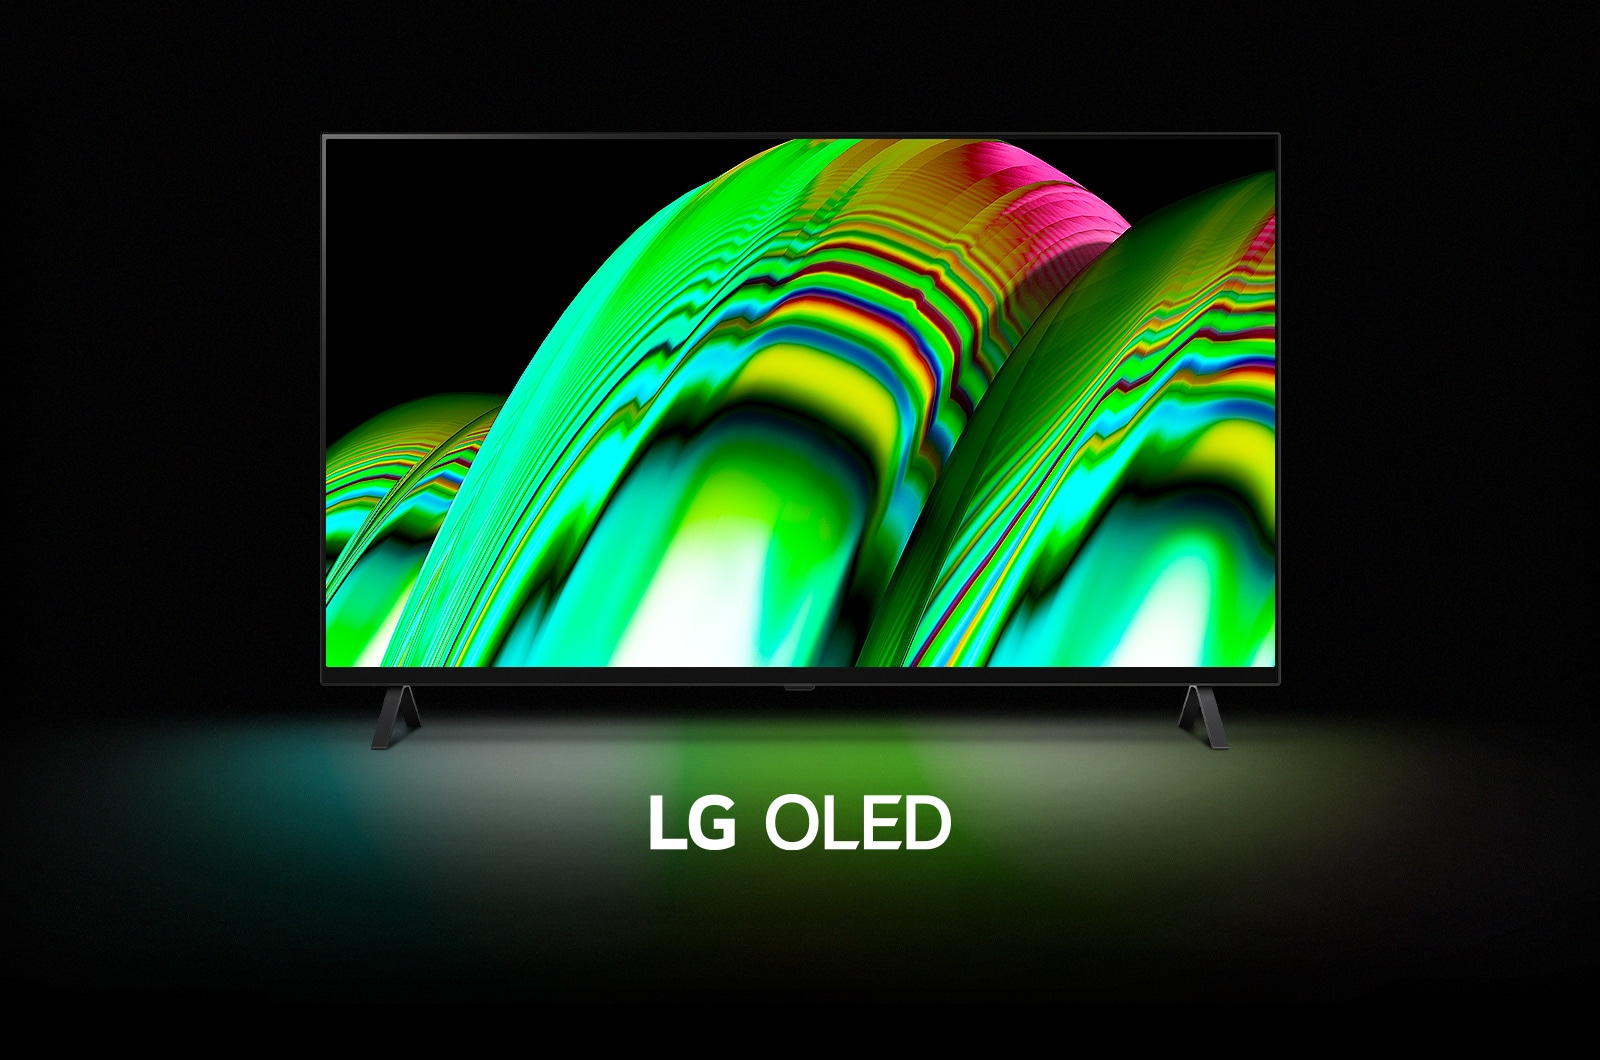 Apstraktni oblik zelenog talasa ispunjava ekran, a zatim se kadar postepeno širi i prikazuje se LG OLED A2. Ekran postaje crn, a zatim se ponovo prikazuje oblik talasa ispod kog stoje reči „LG OLED”.